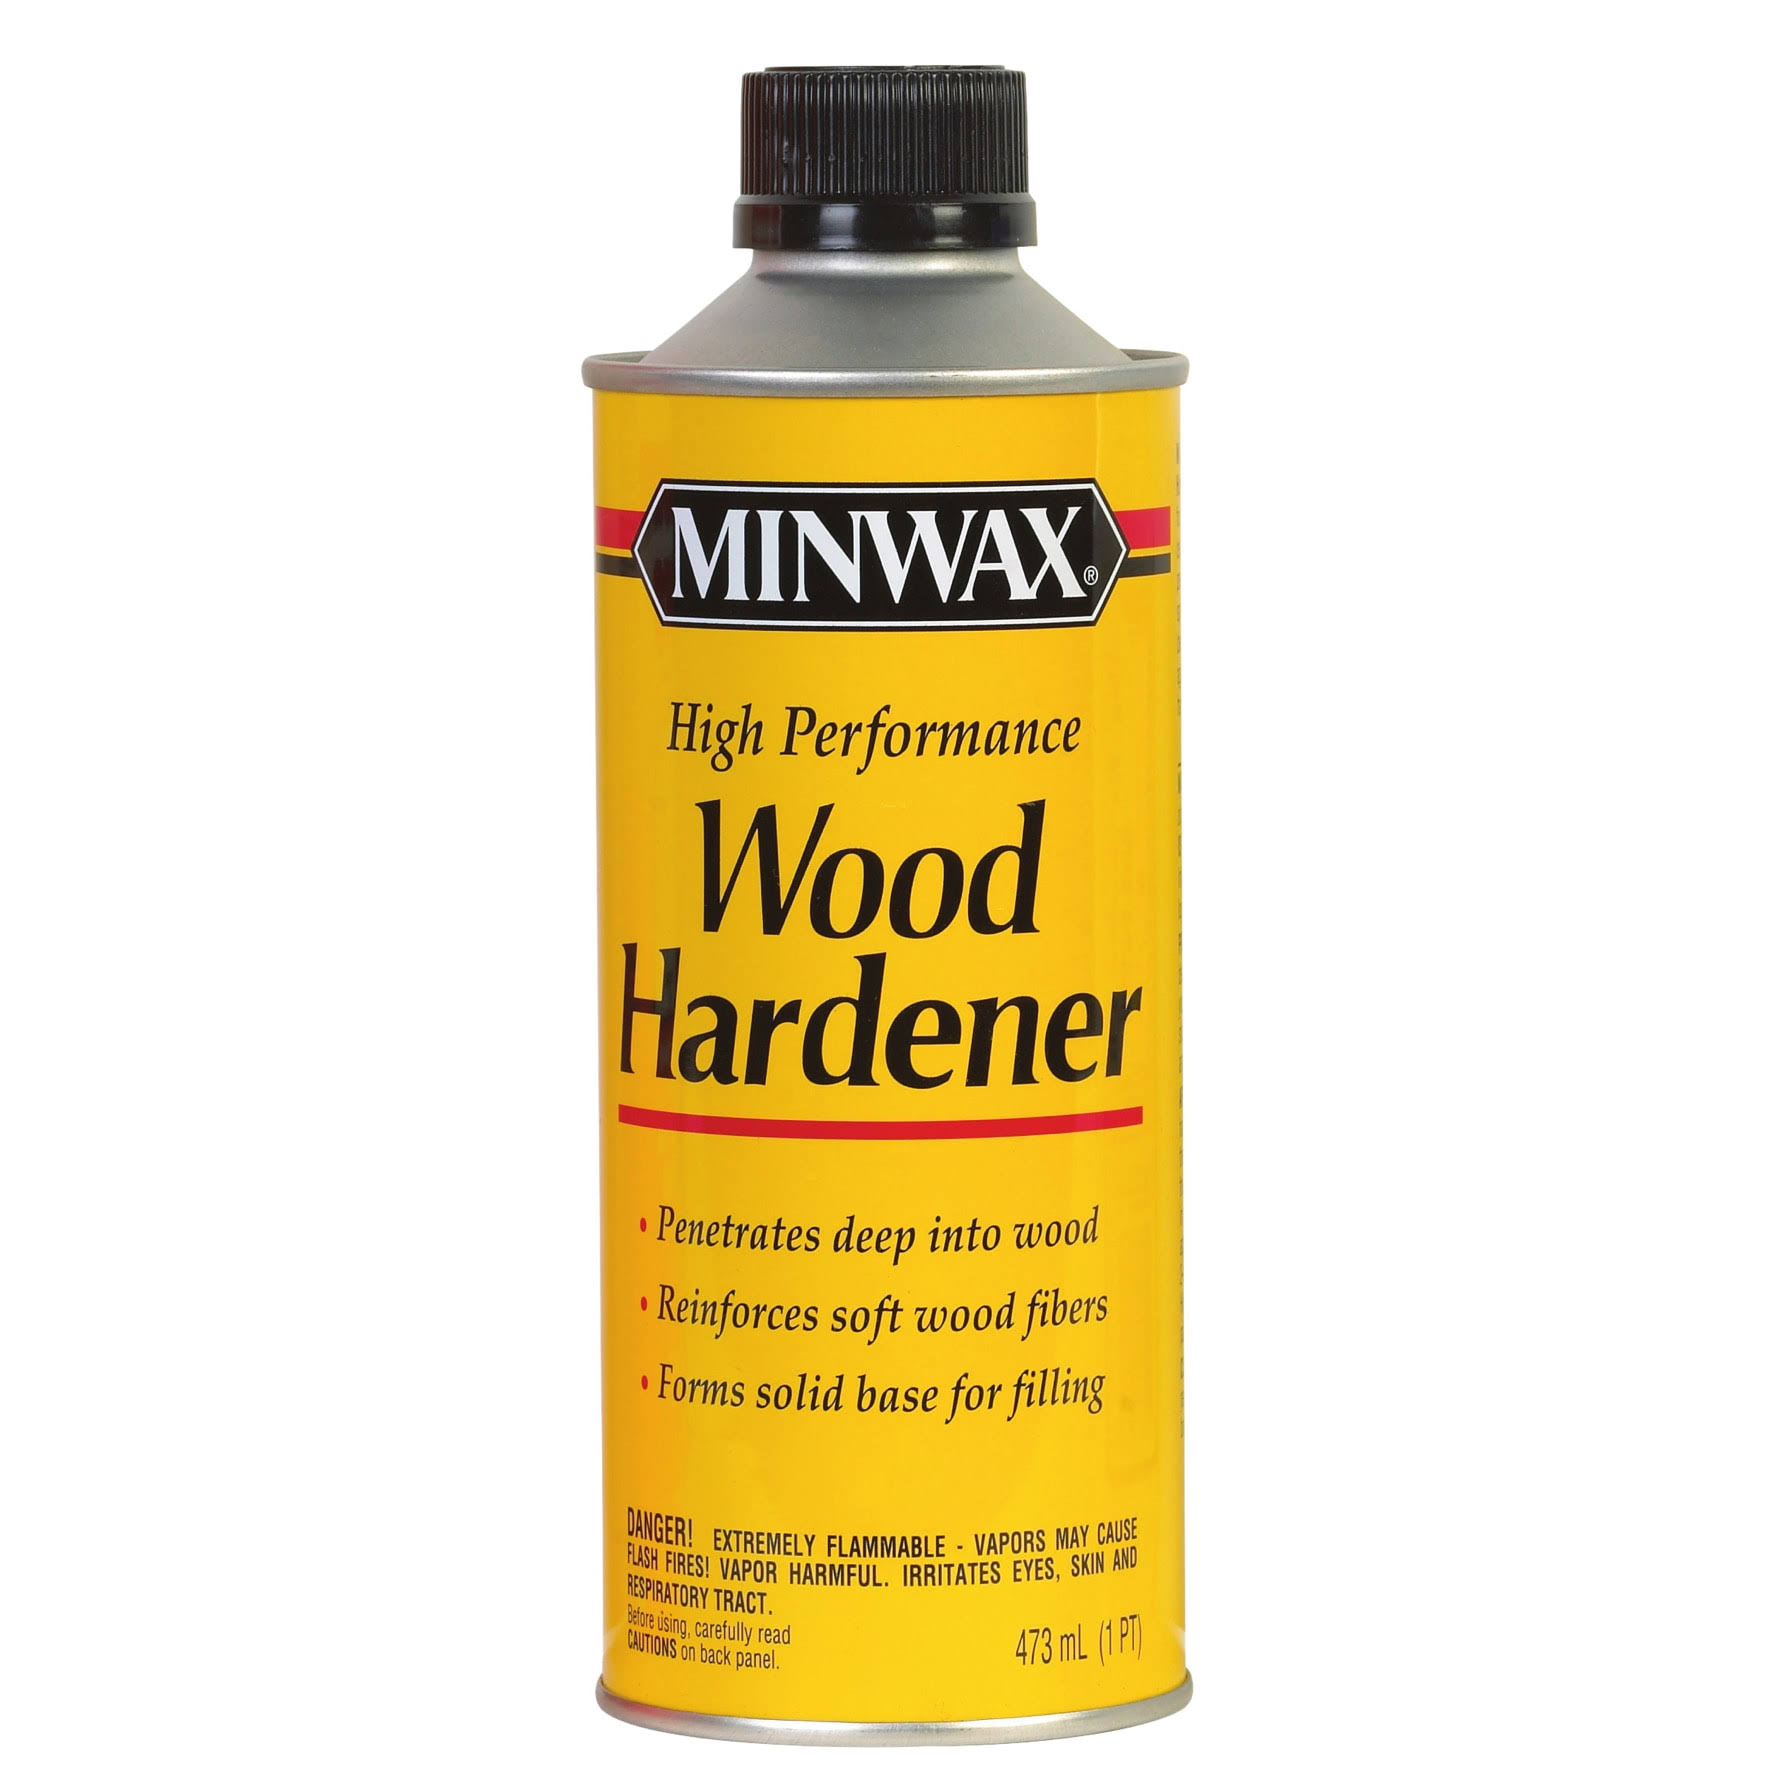 Minwax Wood Hardener